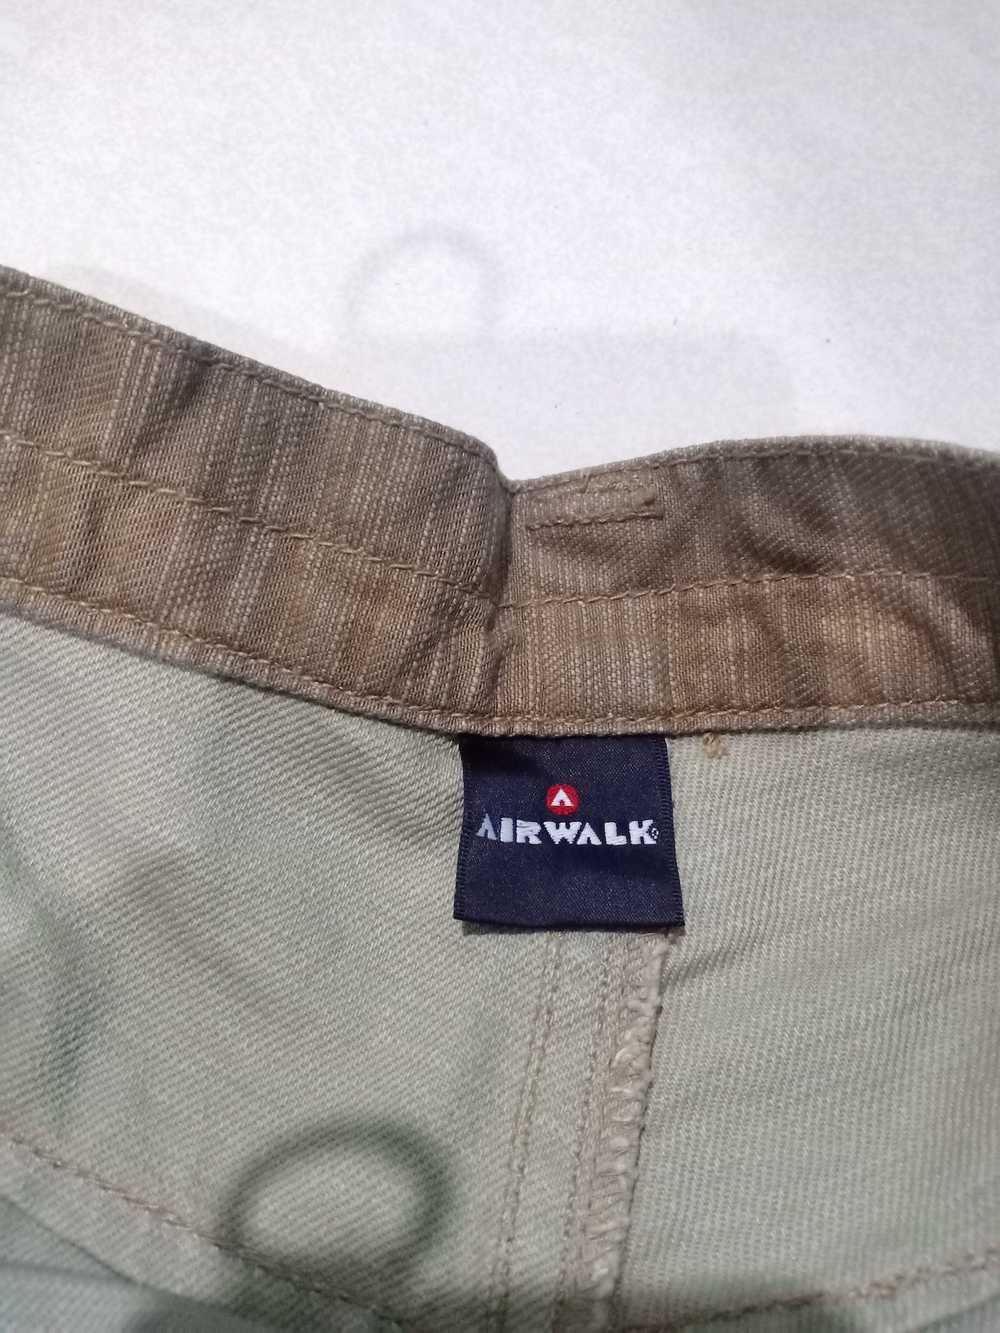 Airwalk airwalk with buckle back pant - image 7